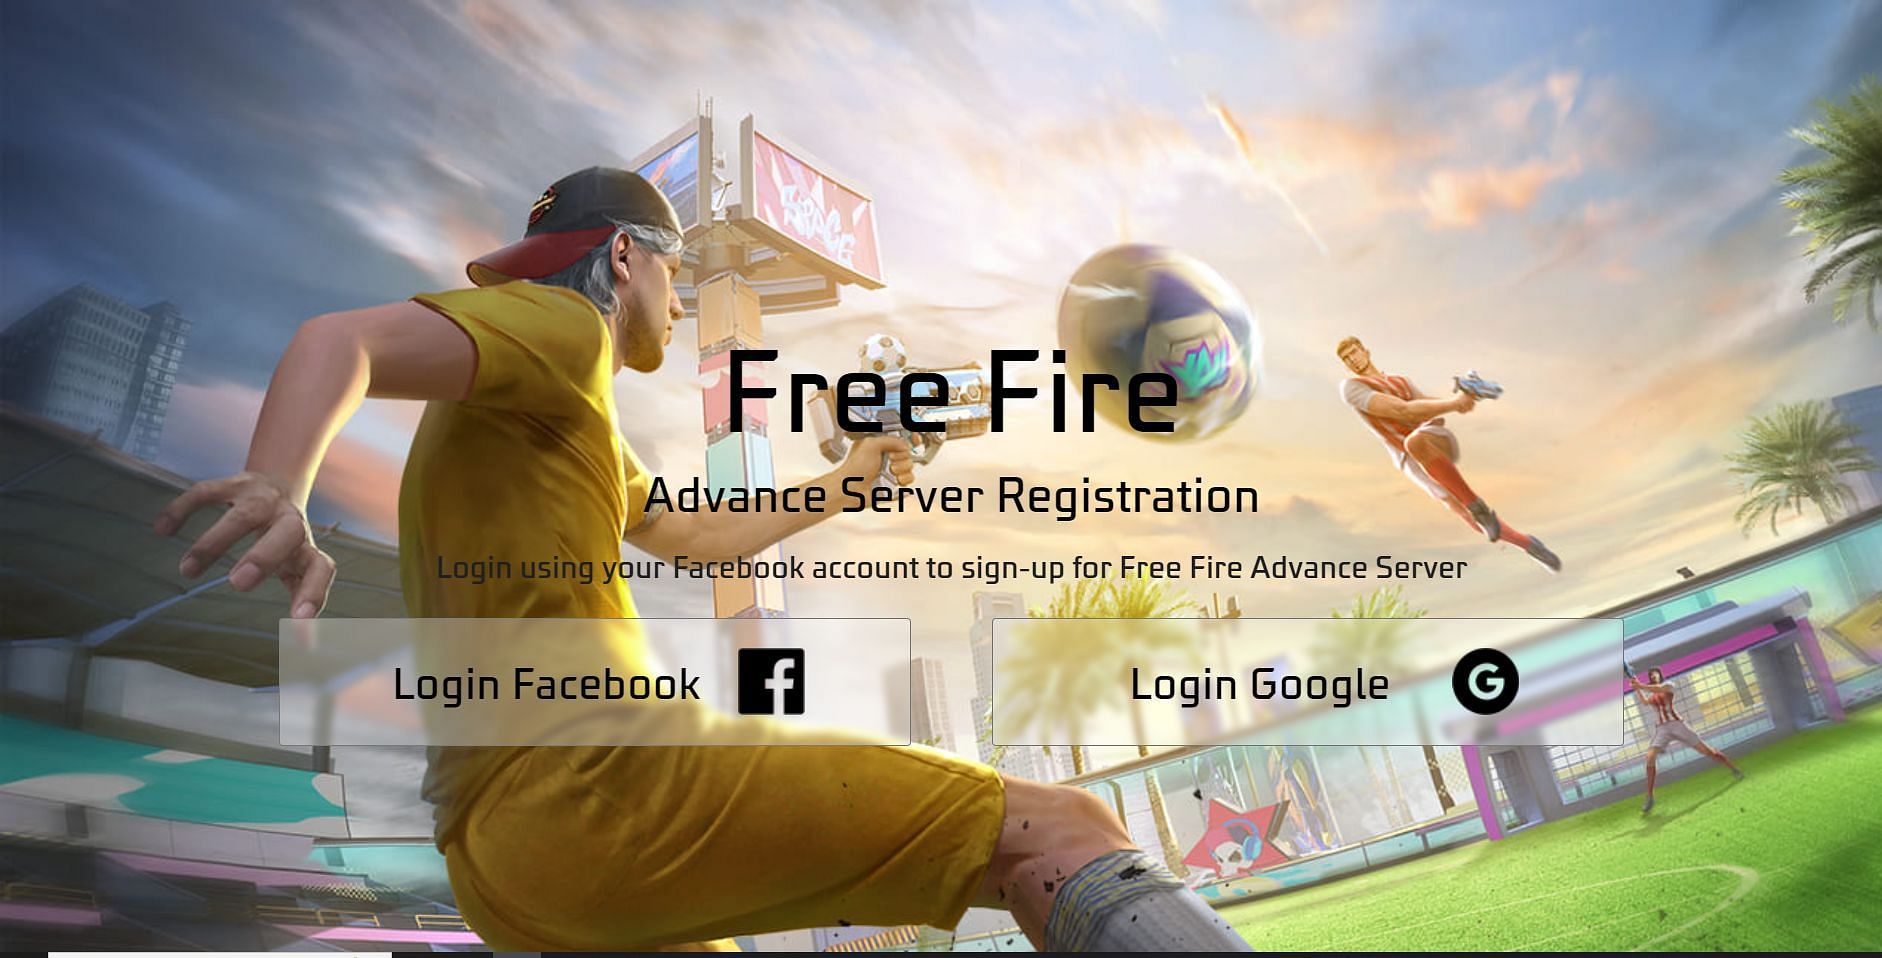 Sign up for Advance Server using Facebook or Google (Image via Garena)